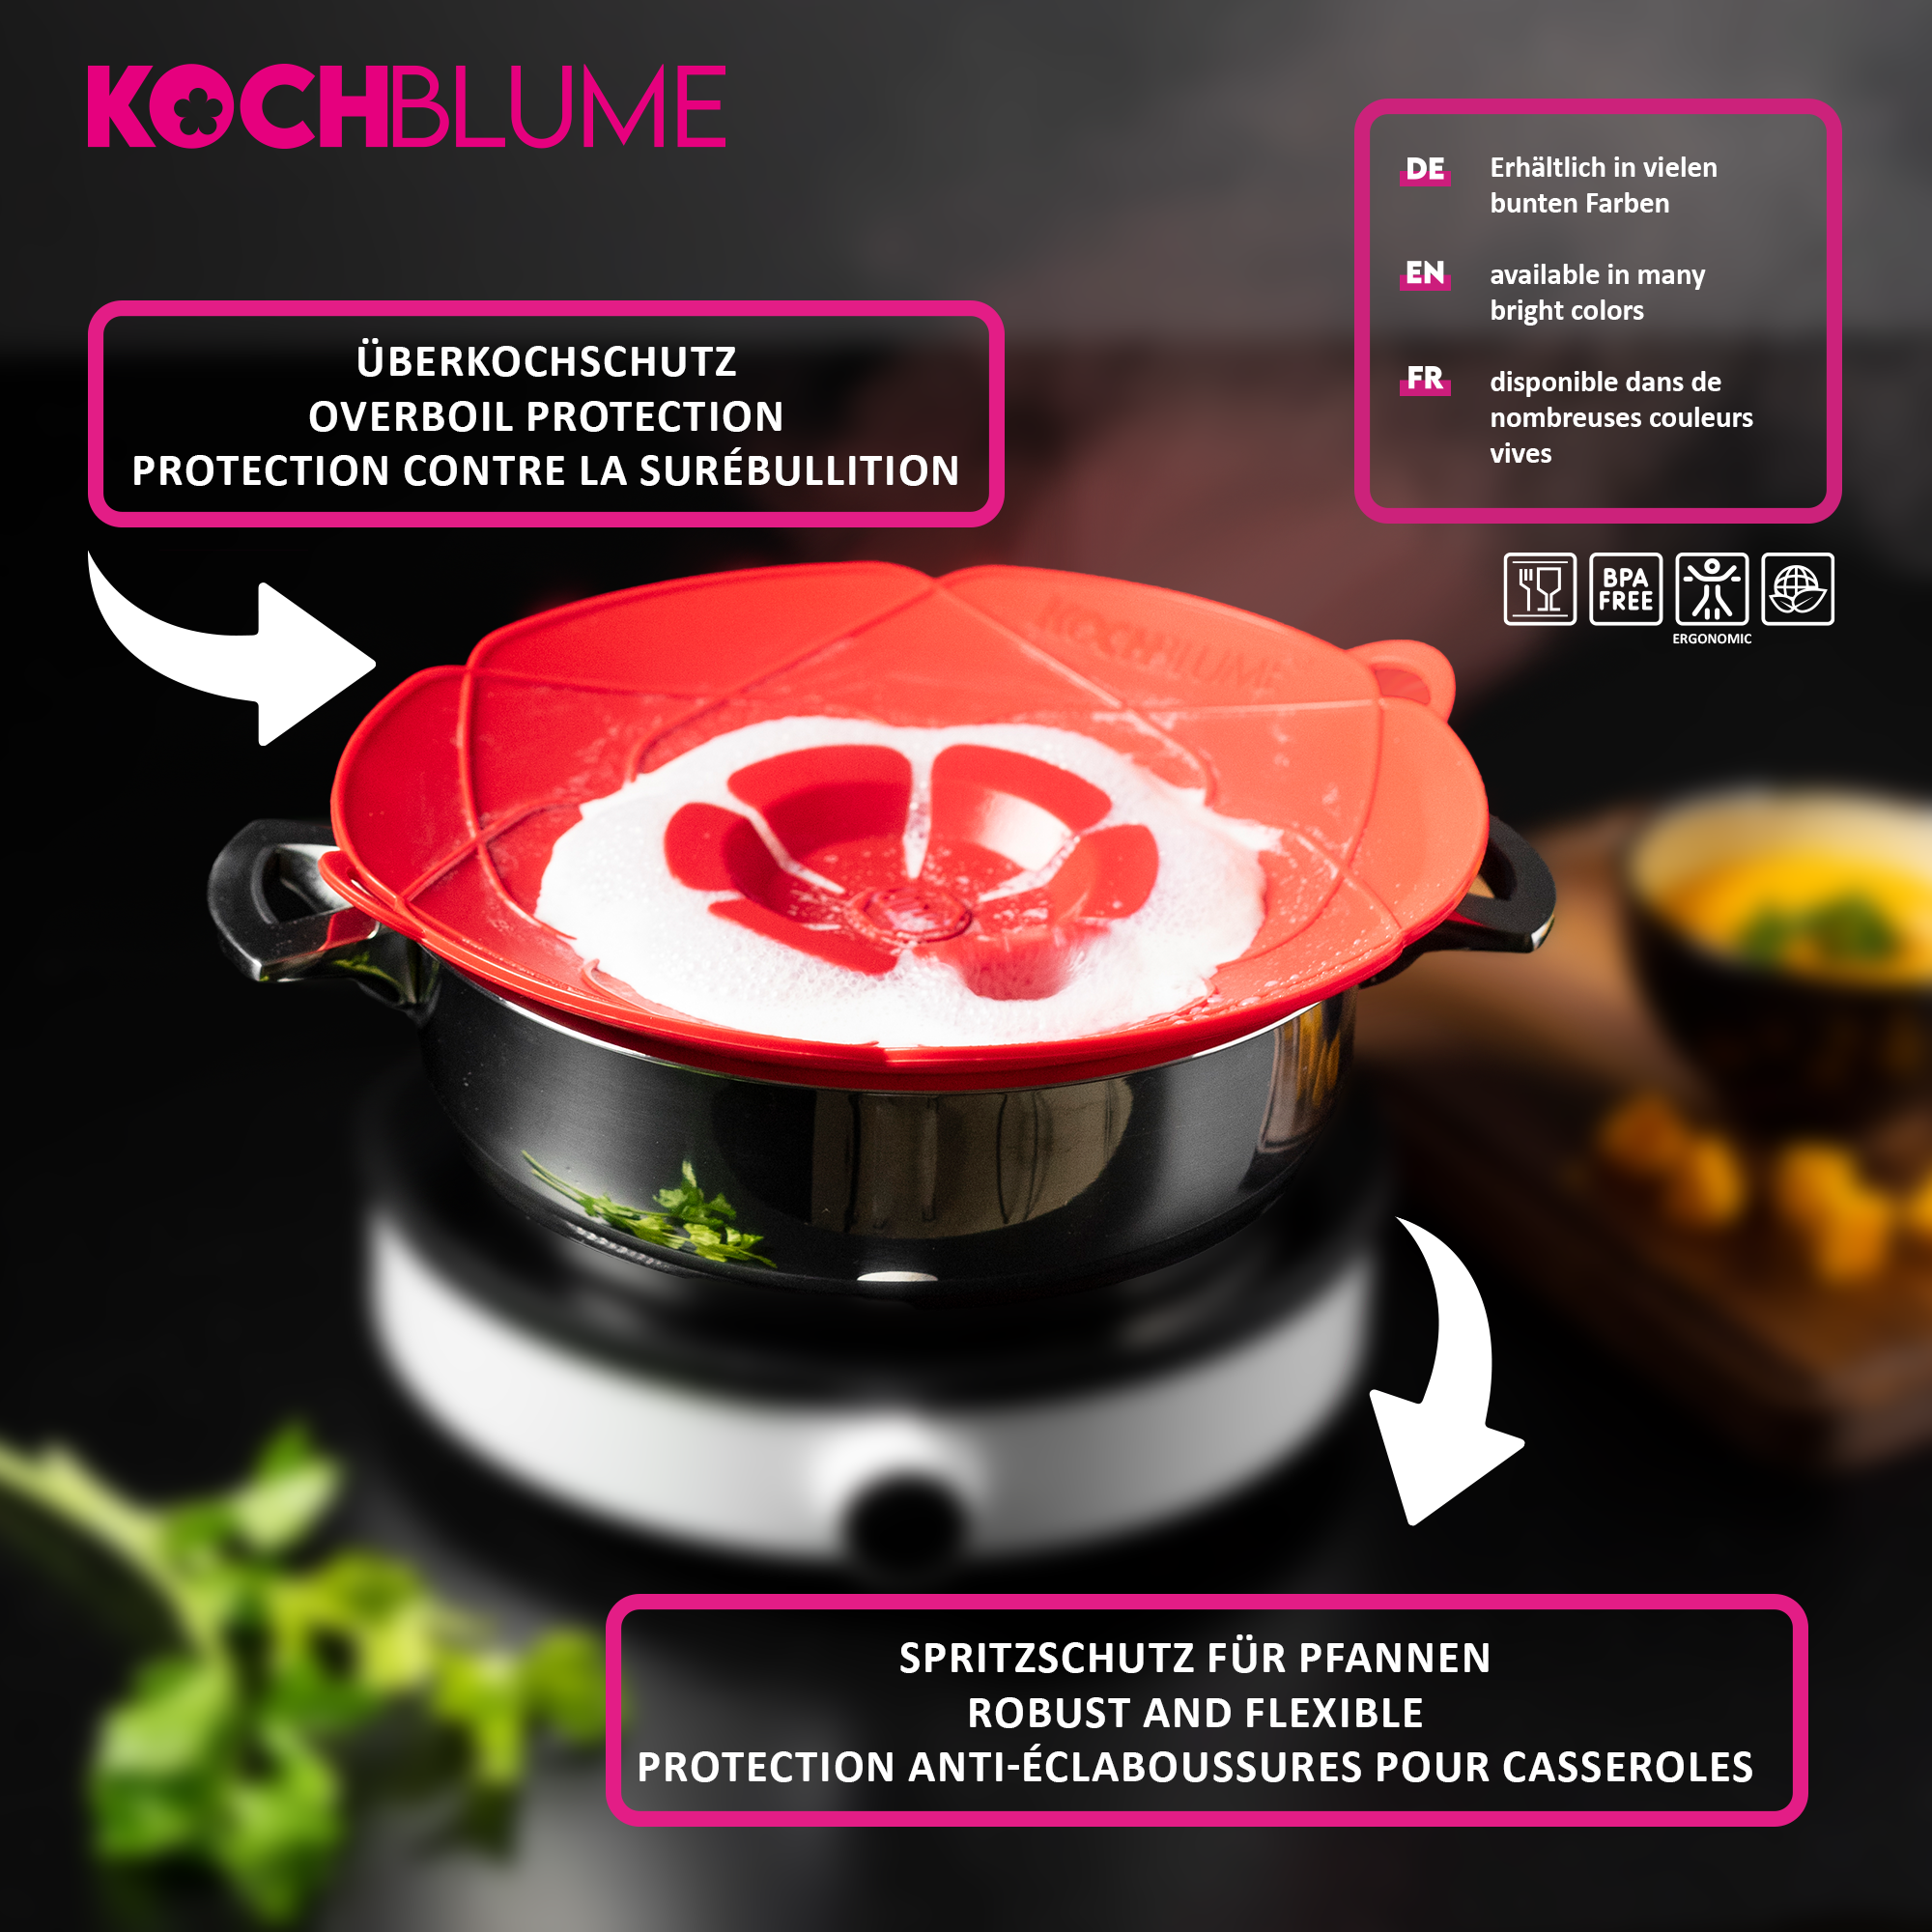 Rote Kochblume mit Informationen zum Produkt